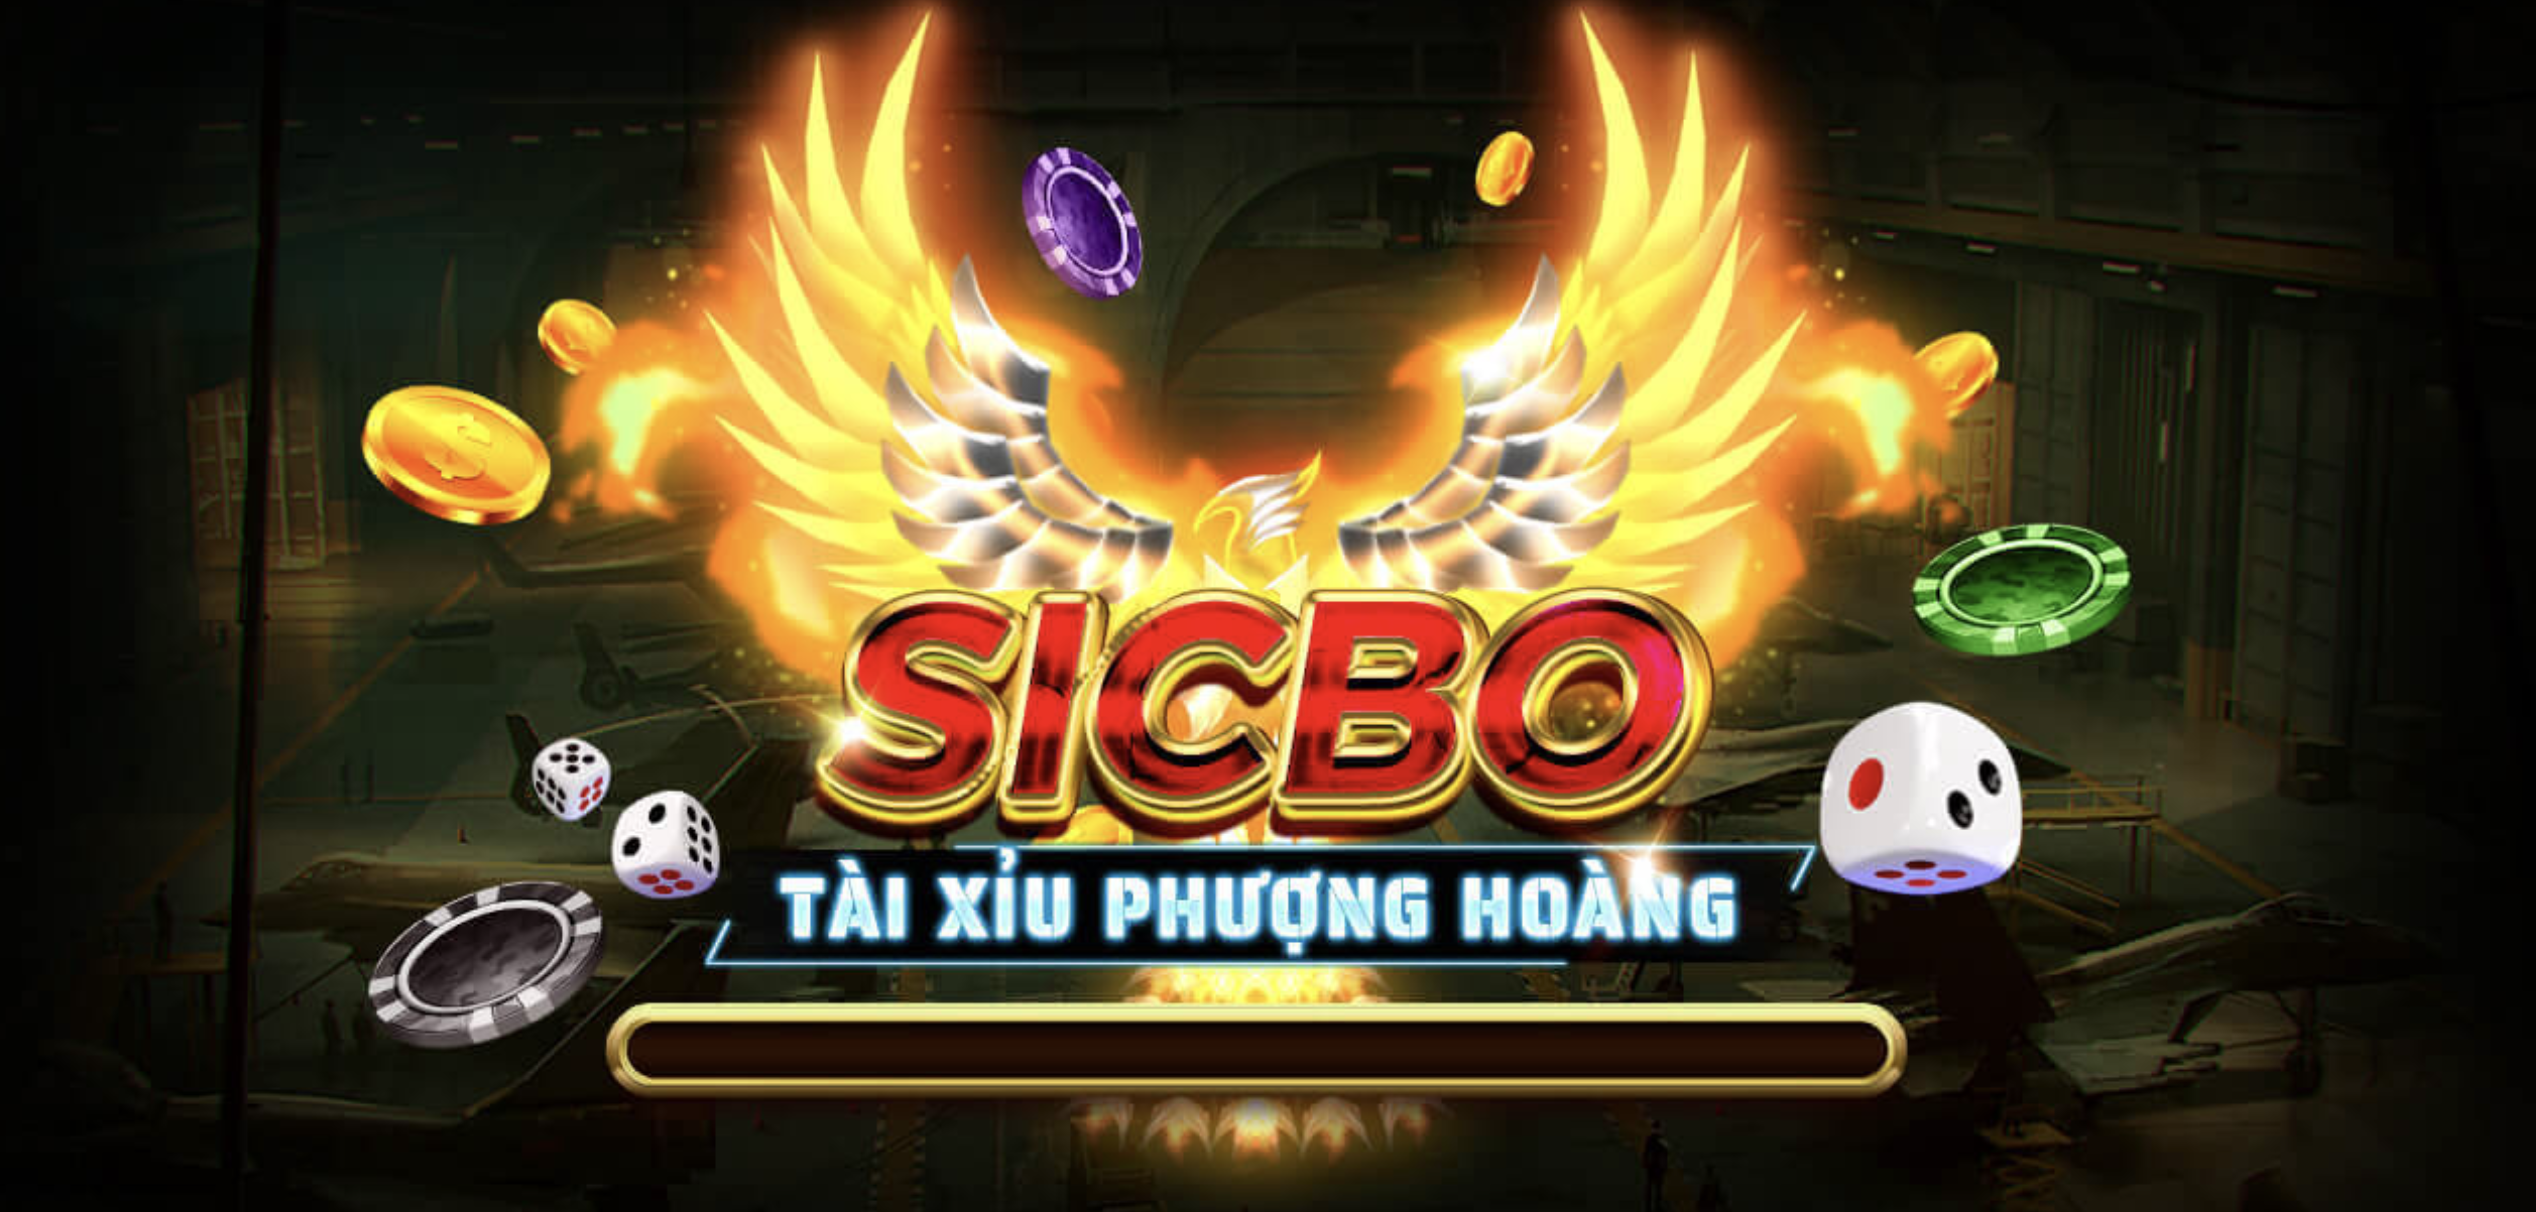 Tài Xỉu Phượng Hoàng là một tựa game thuộc chủ đề Sicbo